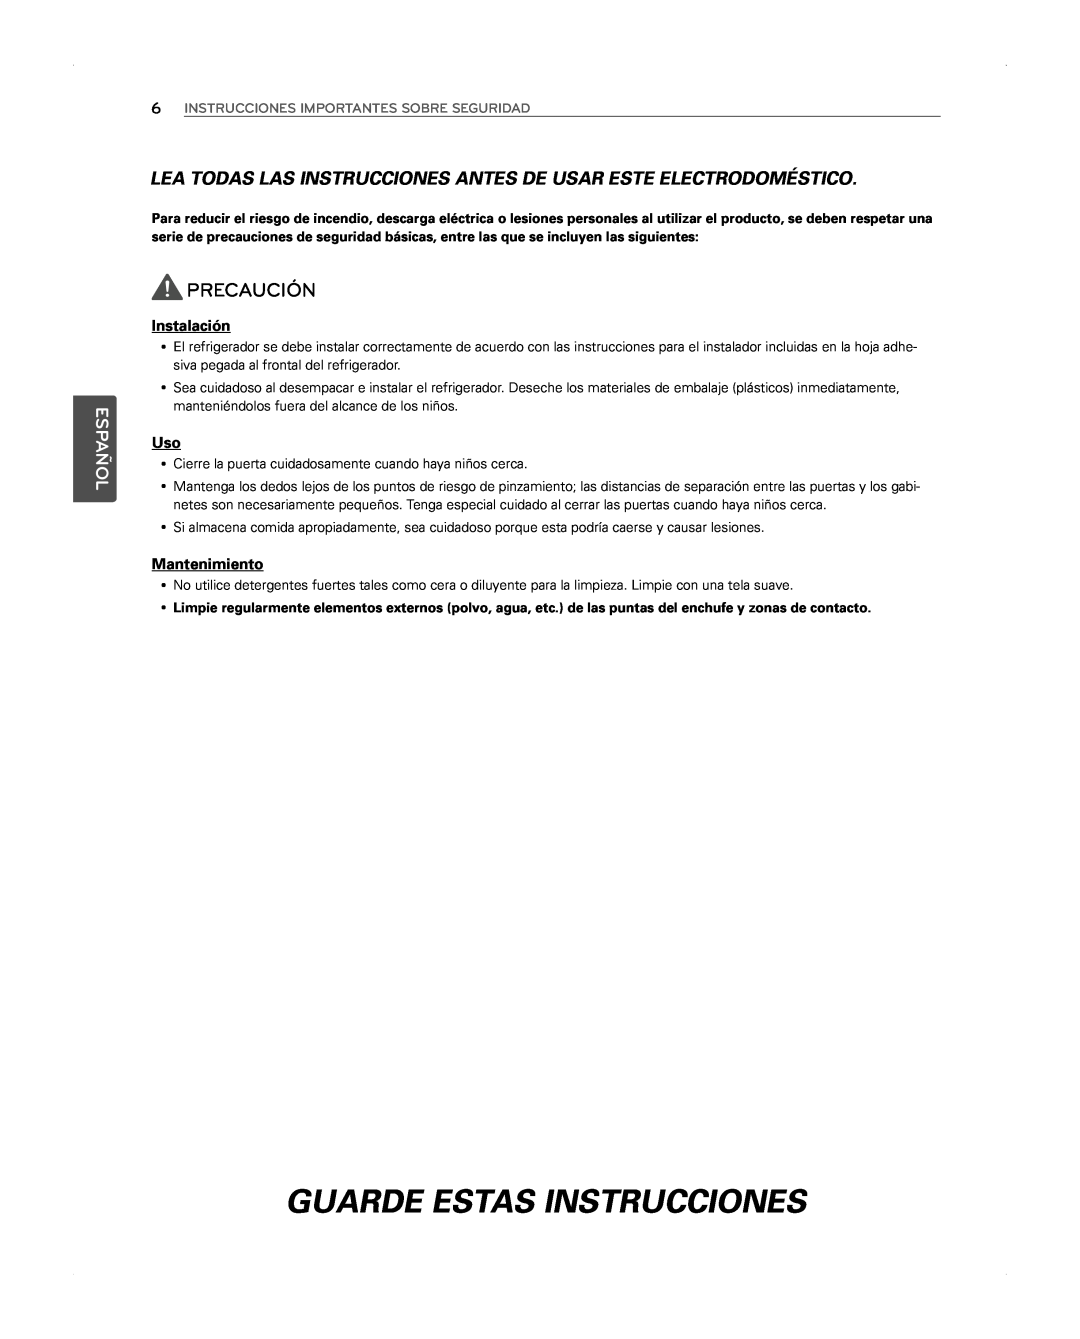 LG Electronics LFX31945ST owner manual Guarde Estas Instrucciones, Precaución, Instalación, Mantenimiento, Español 